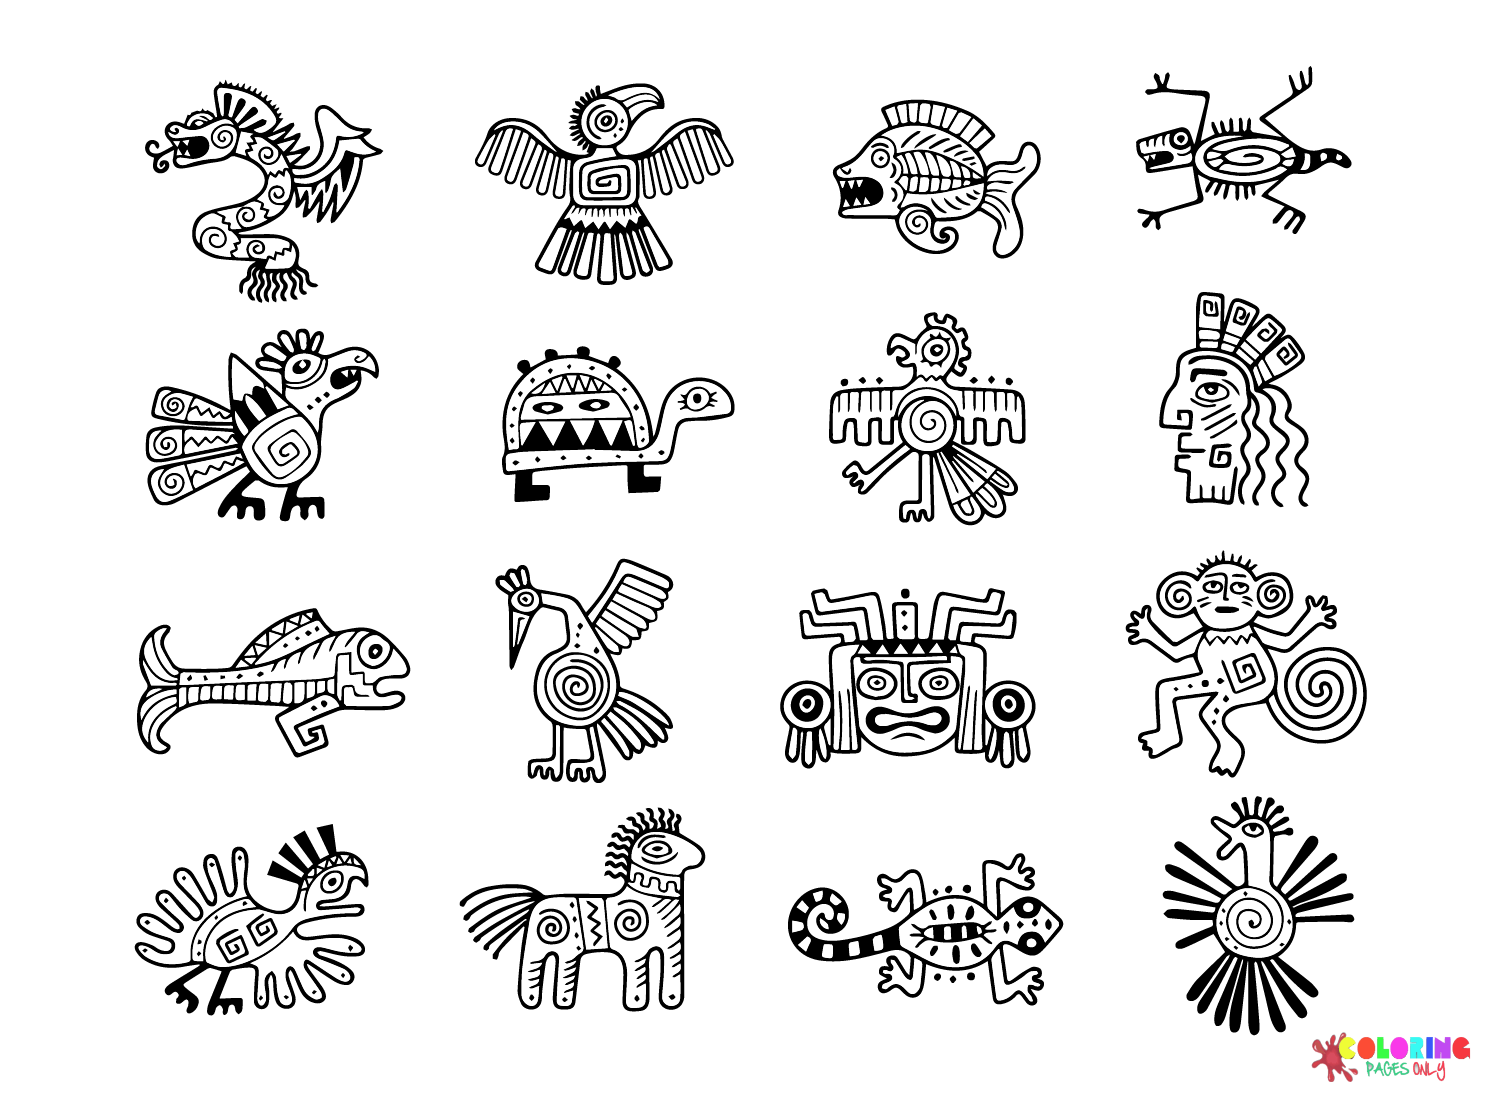 Цивилизация майя в цвете от цивилизации майя